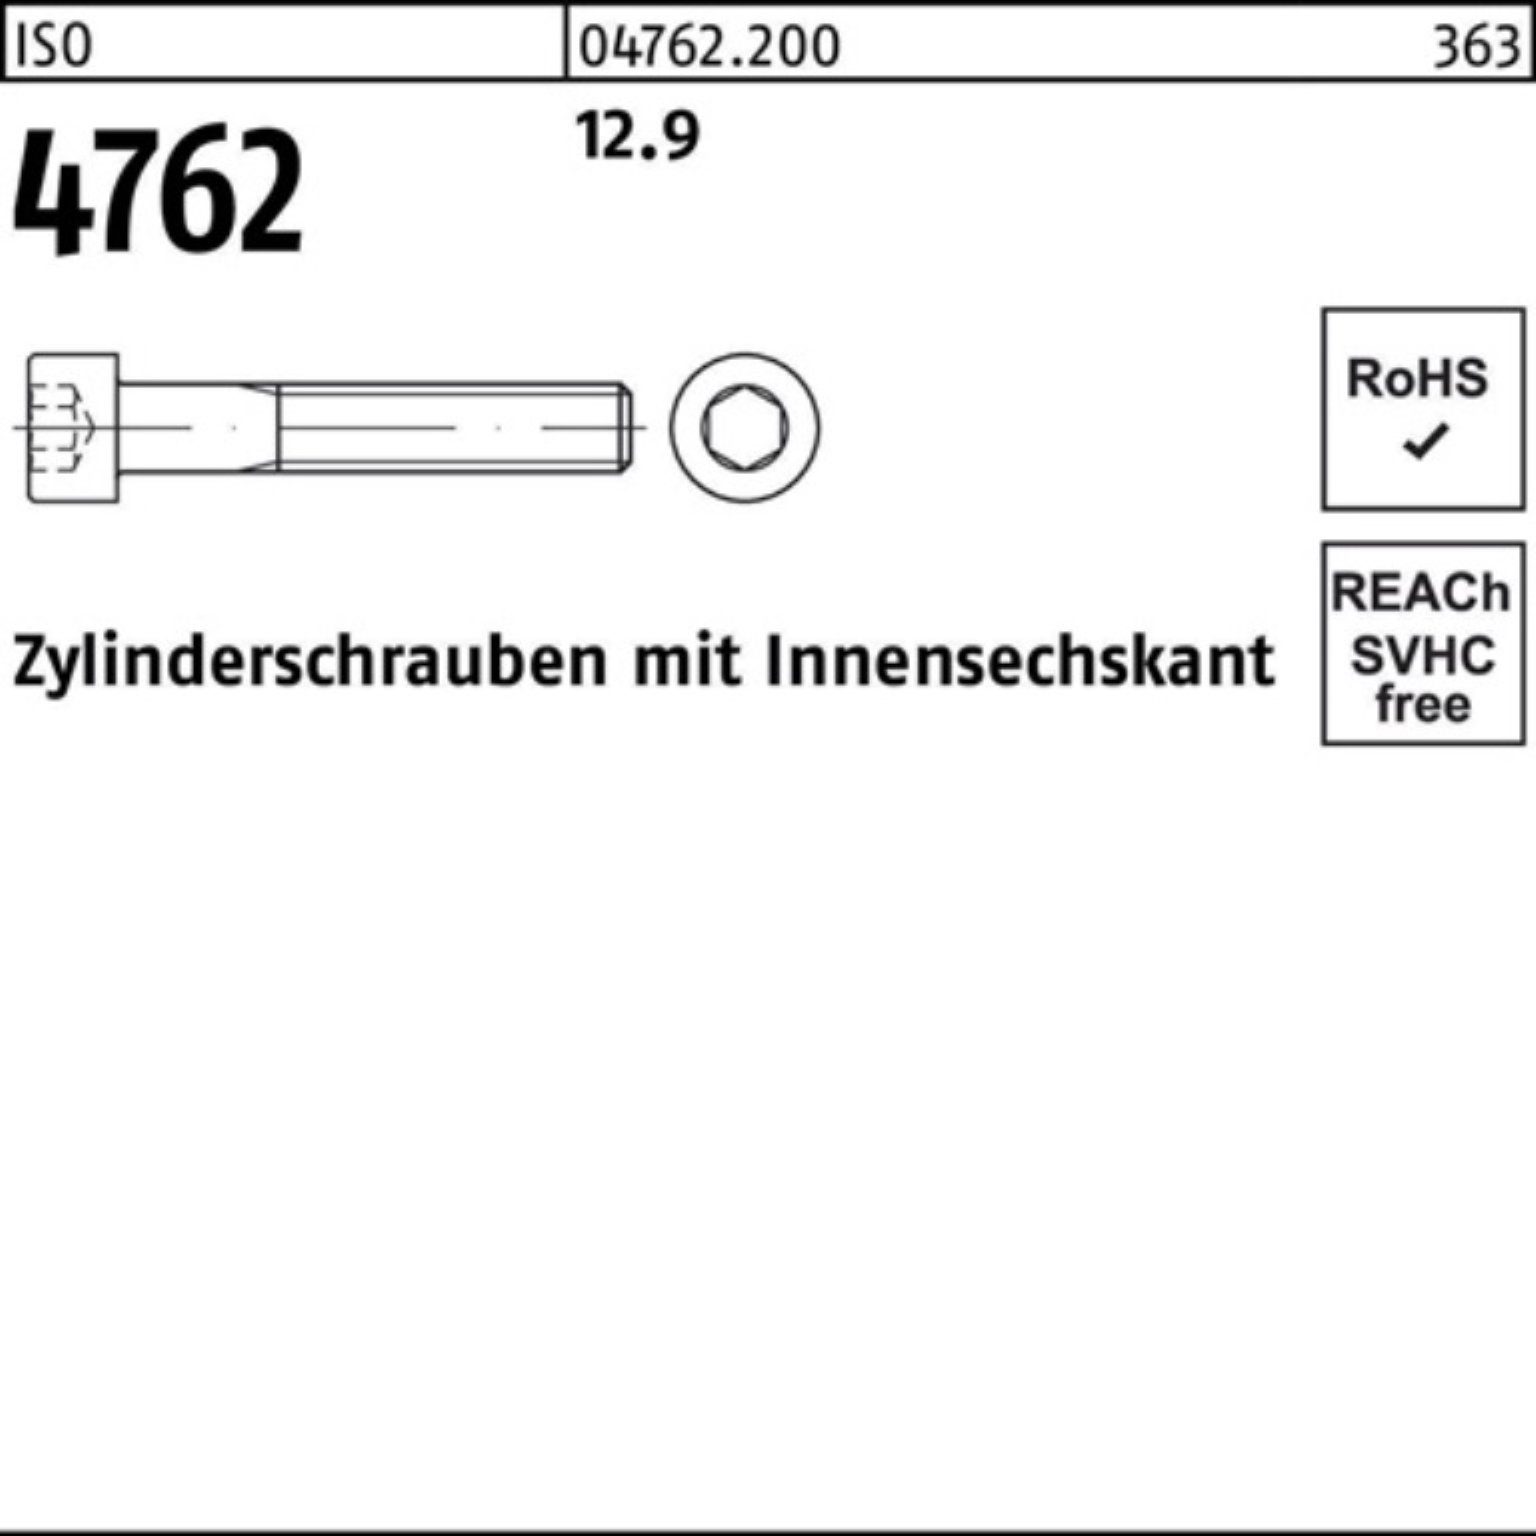 Pack ISO Zylinderschraube Stück 12.9 Innen-6kt 100er 25 85 Zylinderschraube Reyher 4762 M16x